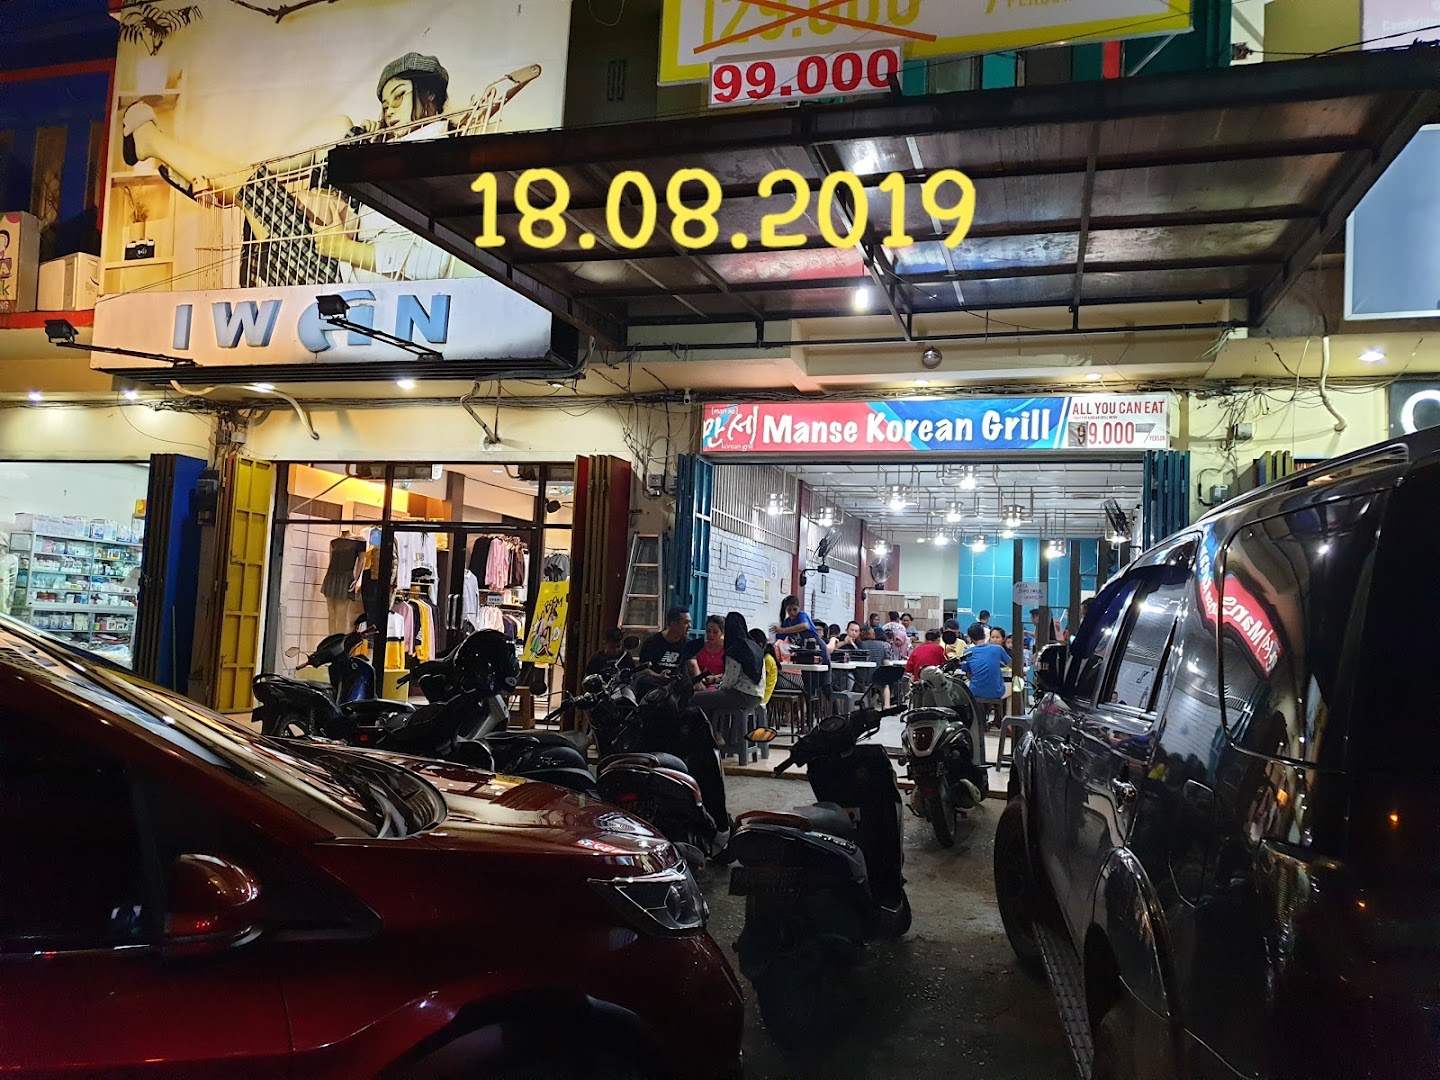 Mansae Hore Korean Grill Sorong Cabang Kampung Baru Photo